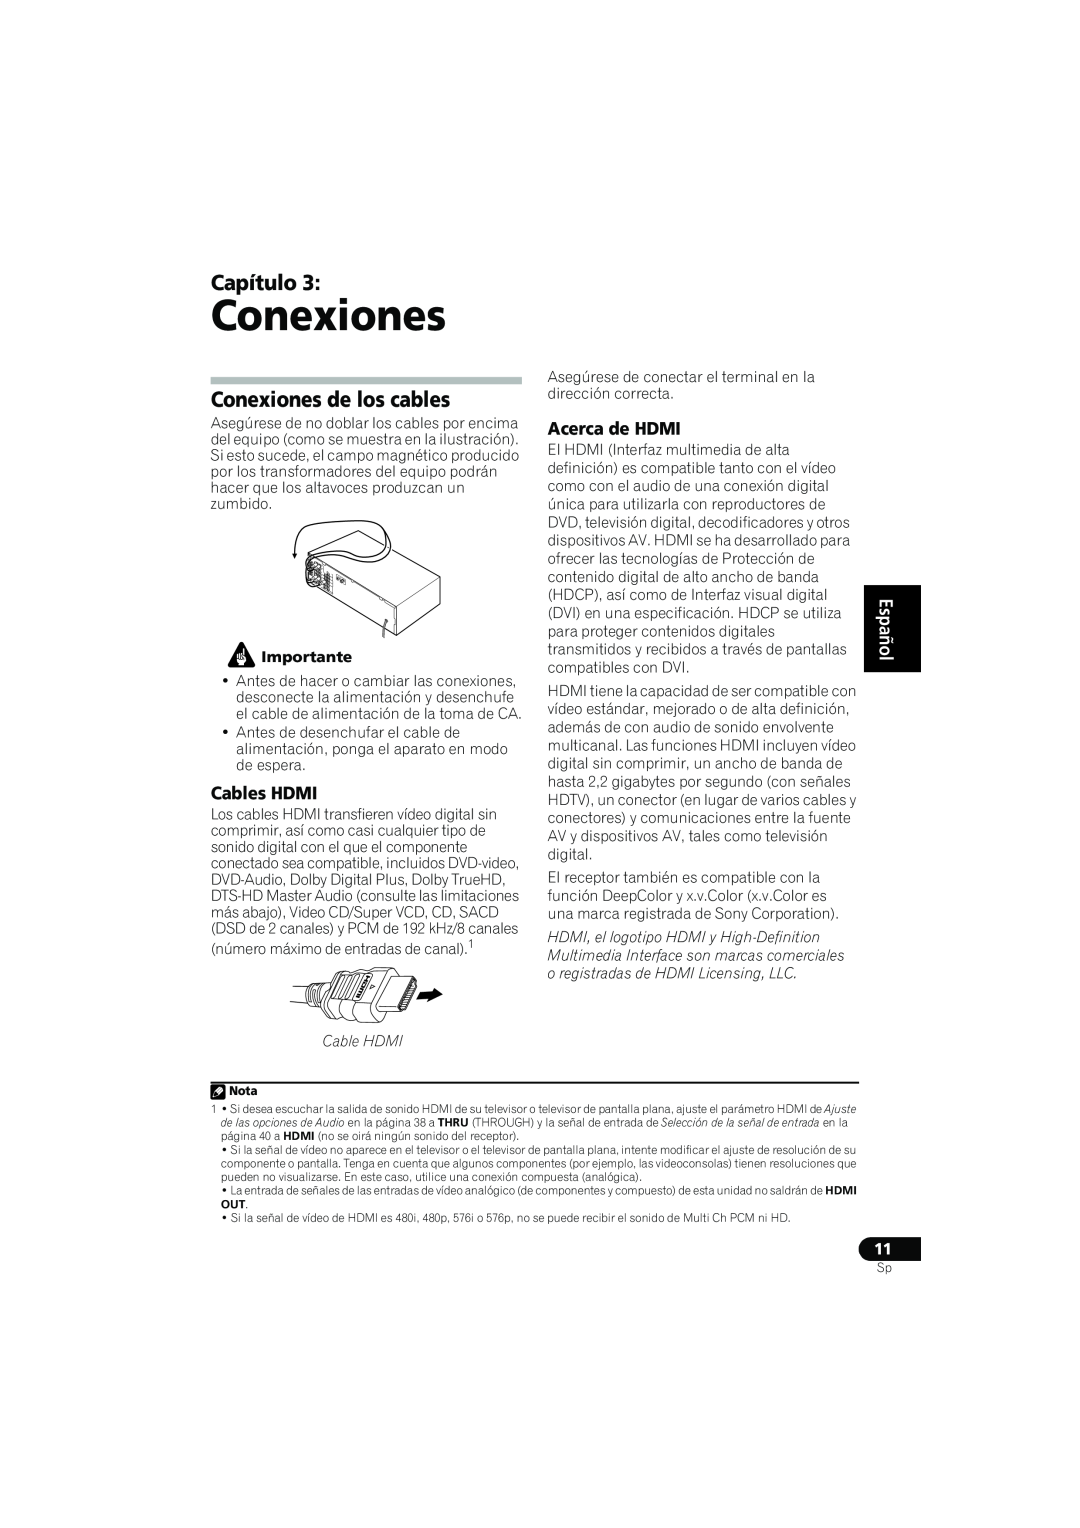 Pioneer VSX-819H-S manual Conexiones de los cables, Cables HDMI, Acerca de HDMI, Capítulo, English Español, Cable HDMI 